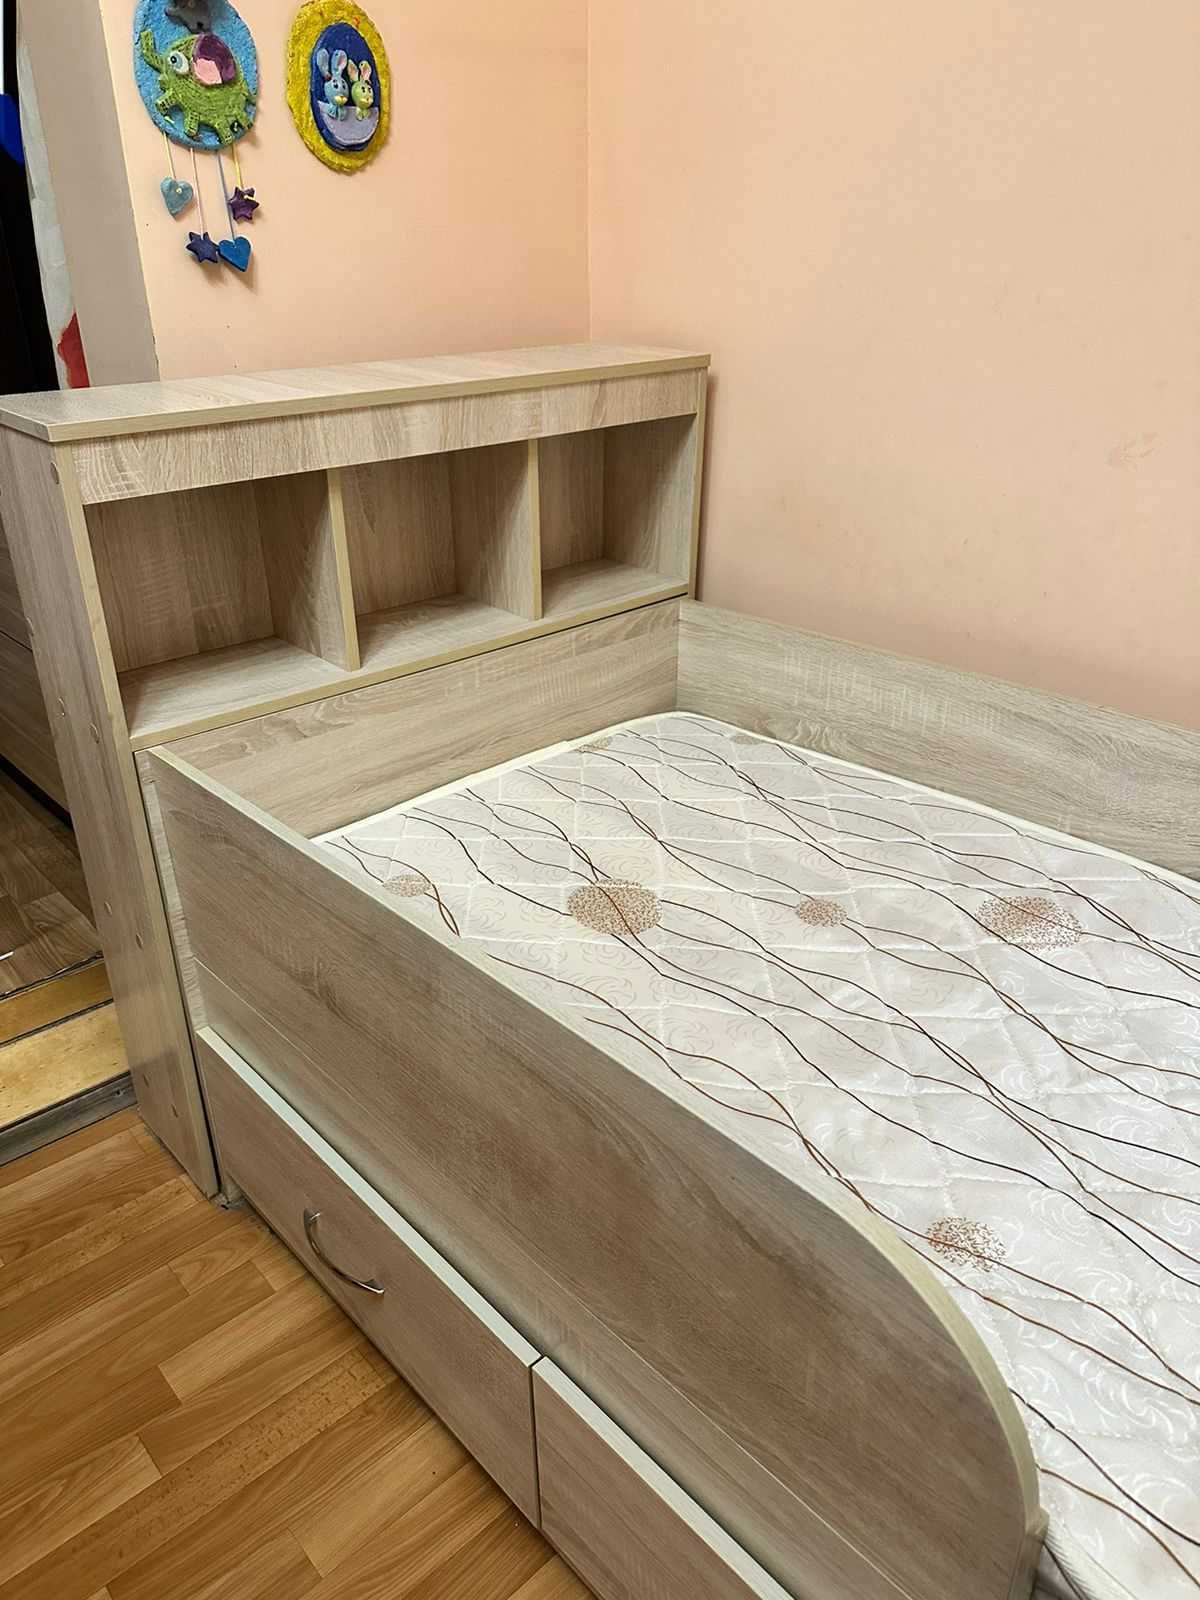 Кровать детская с матрасом, выдвижными ящиками и прикроватной полочкой